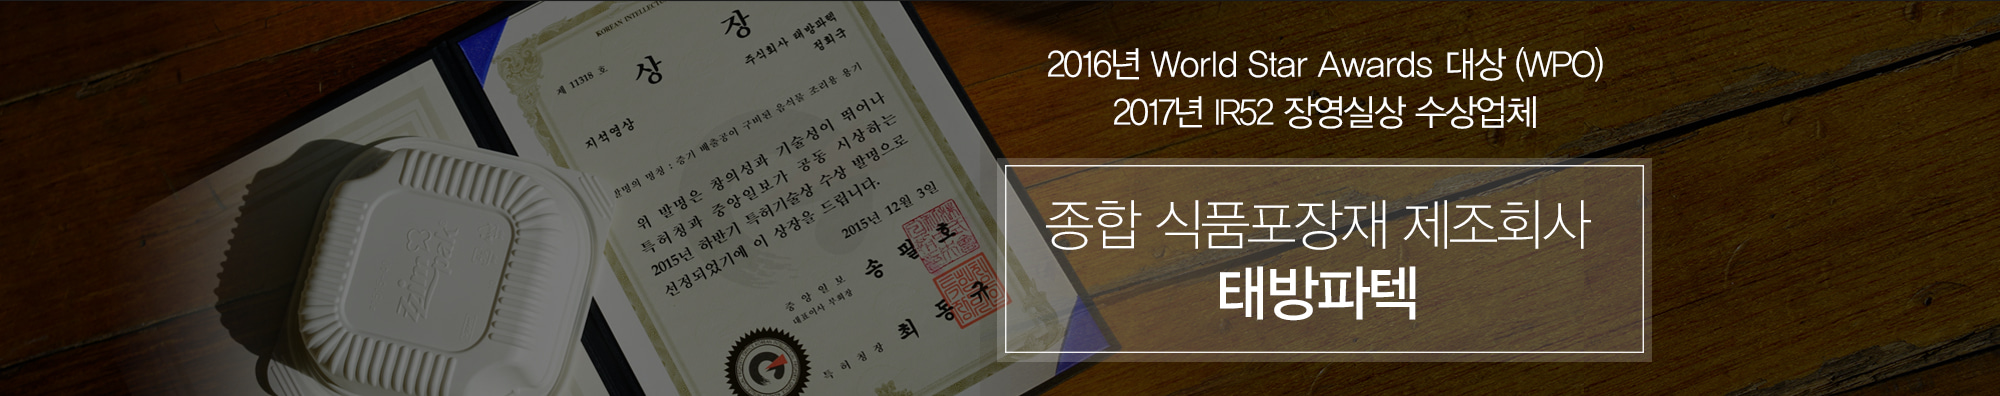 2016년 WORLD STAR AWARDS 대상 (WPO), 2017년 IR52 장영실상 수상업체, 세계 일류 포장재 제조회사 태방파텍